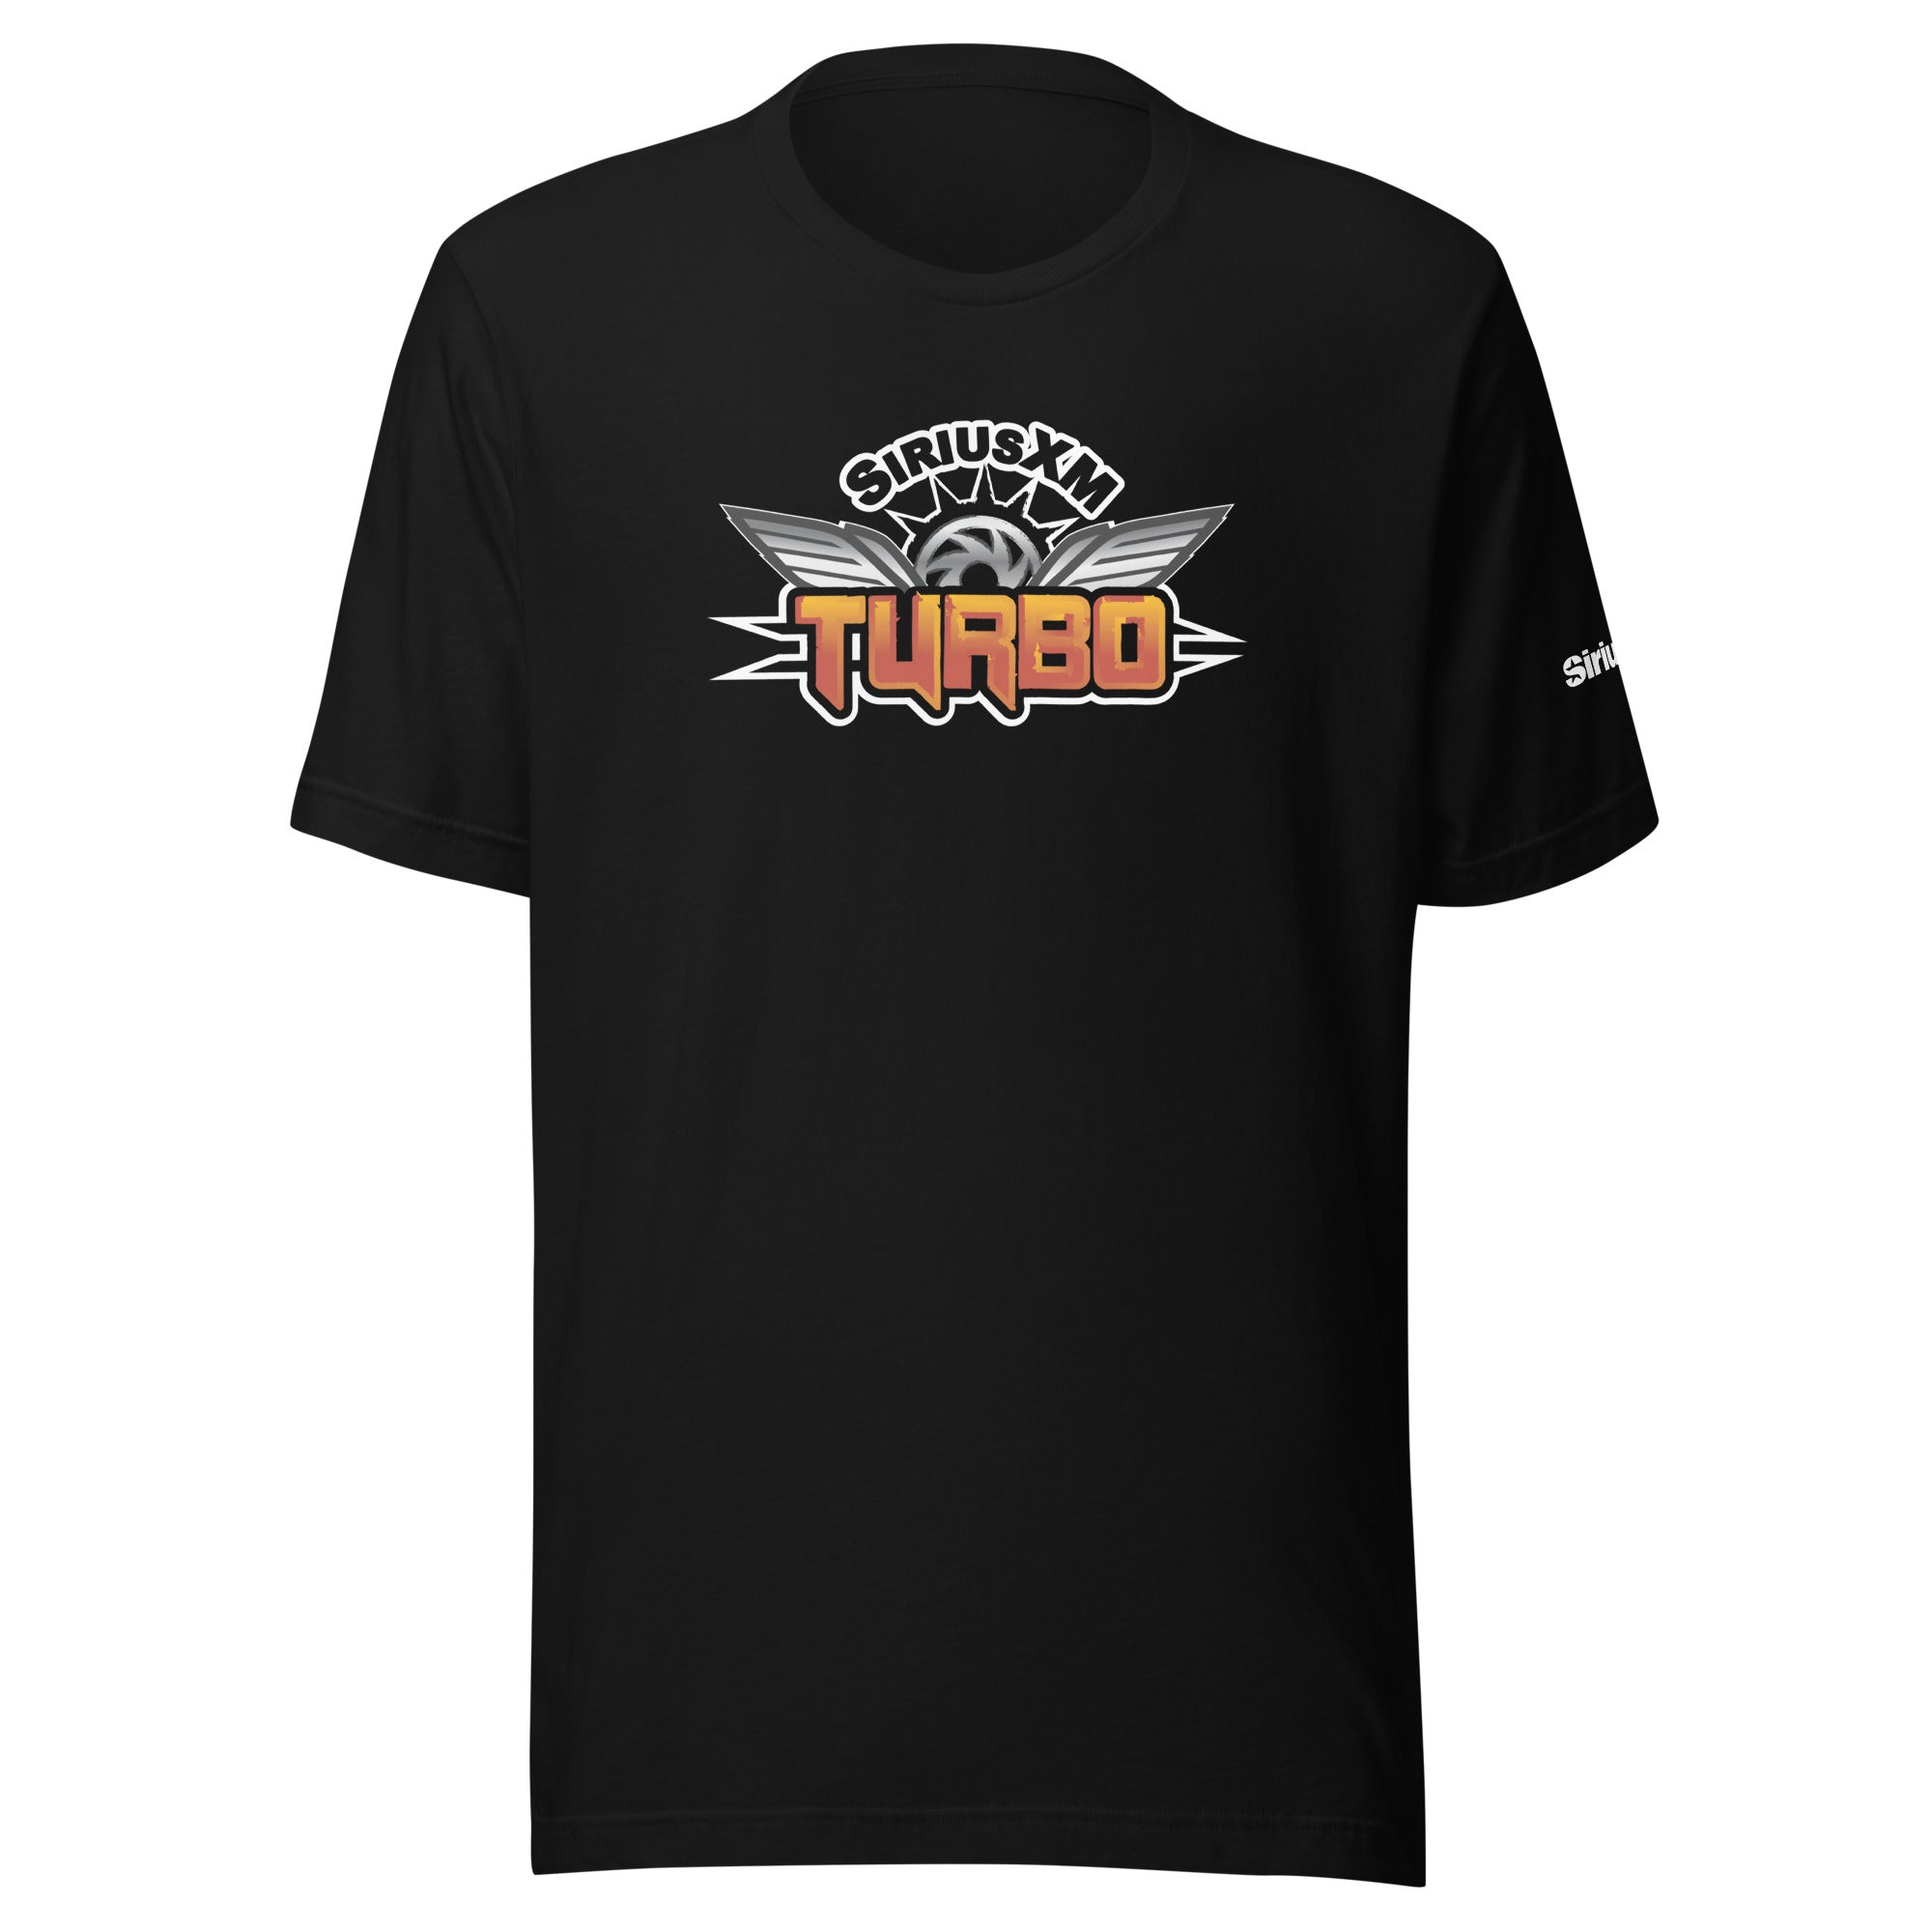 SiriusXM Turbo: T-shirt (Black)